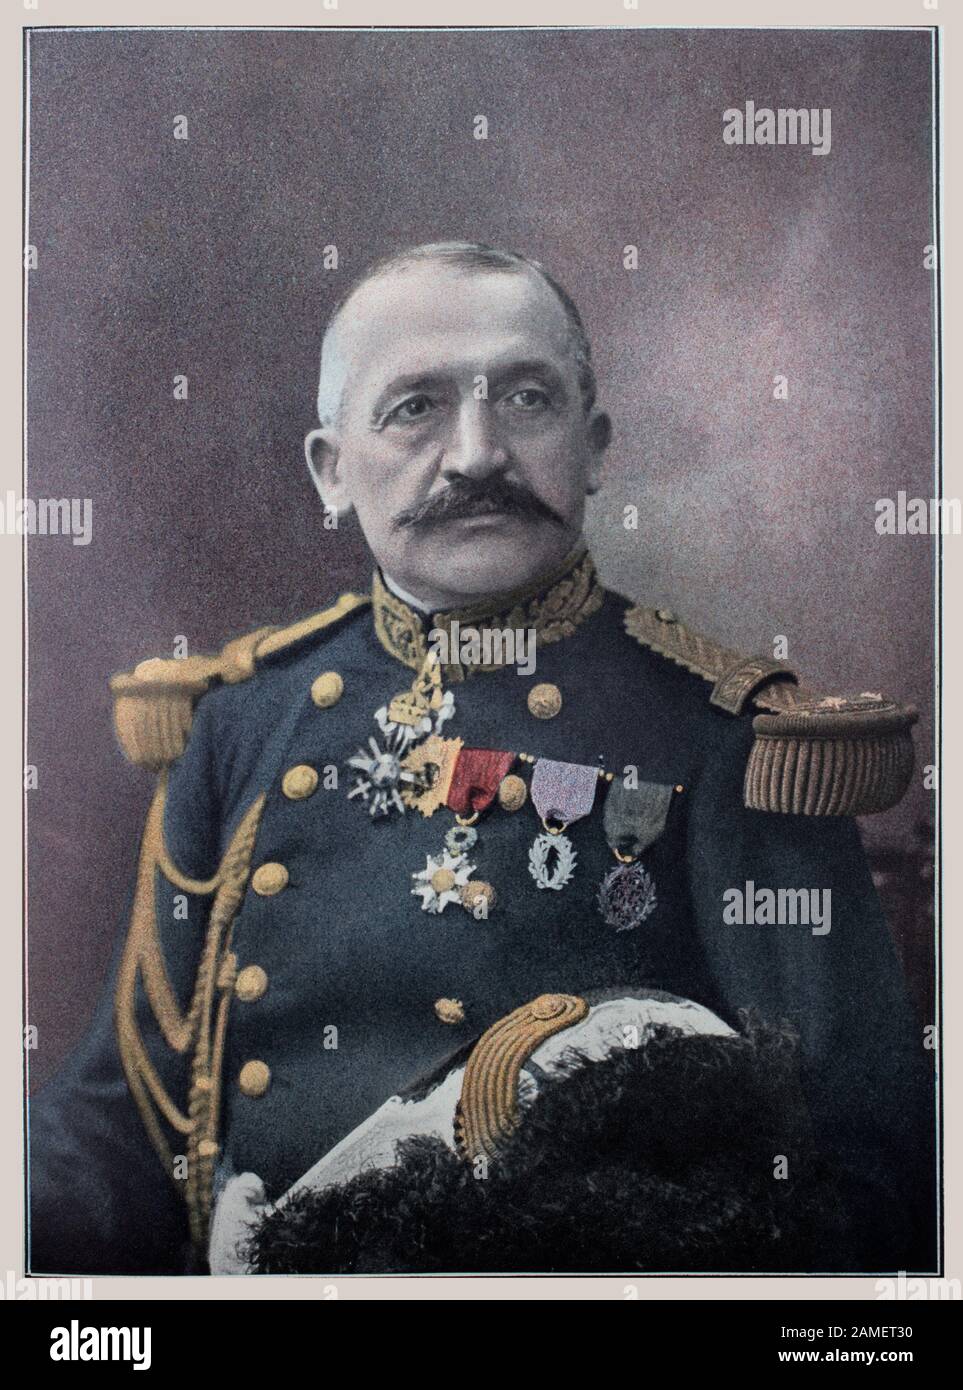 Paul Andre Marie Maistre (1858-1922) était un général français, commandant des 6 et 10 armées françaises pendant la première Guerre mondiale Banque D'Images